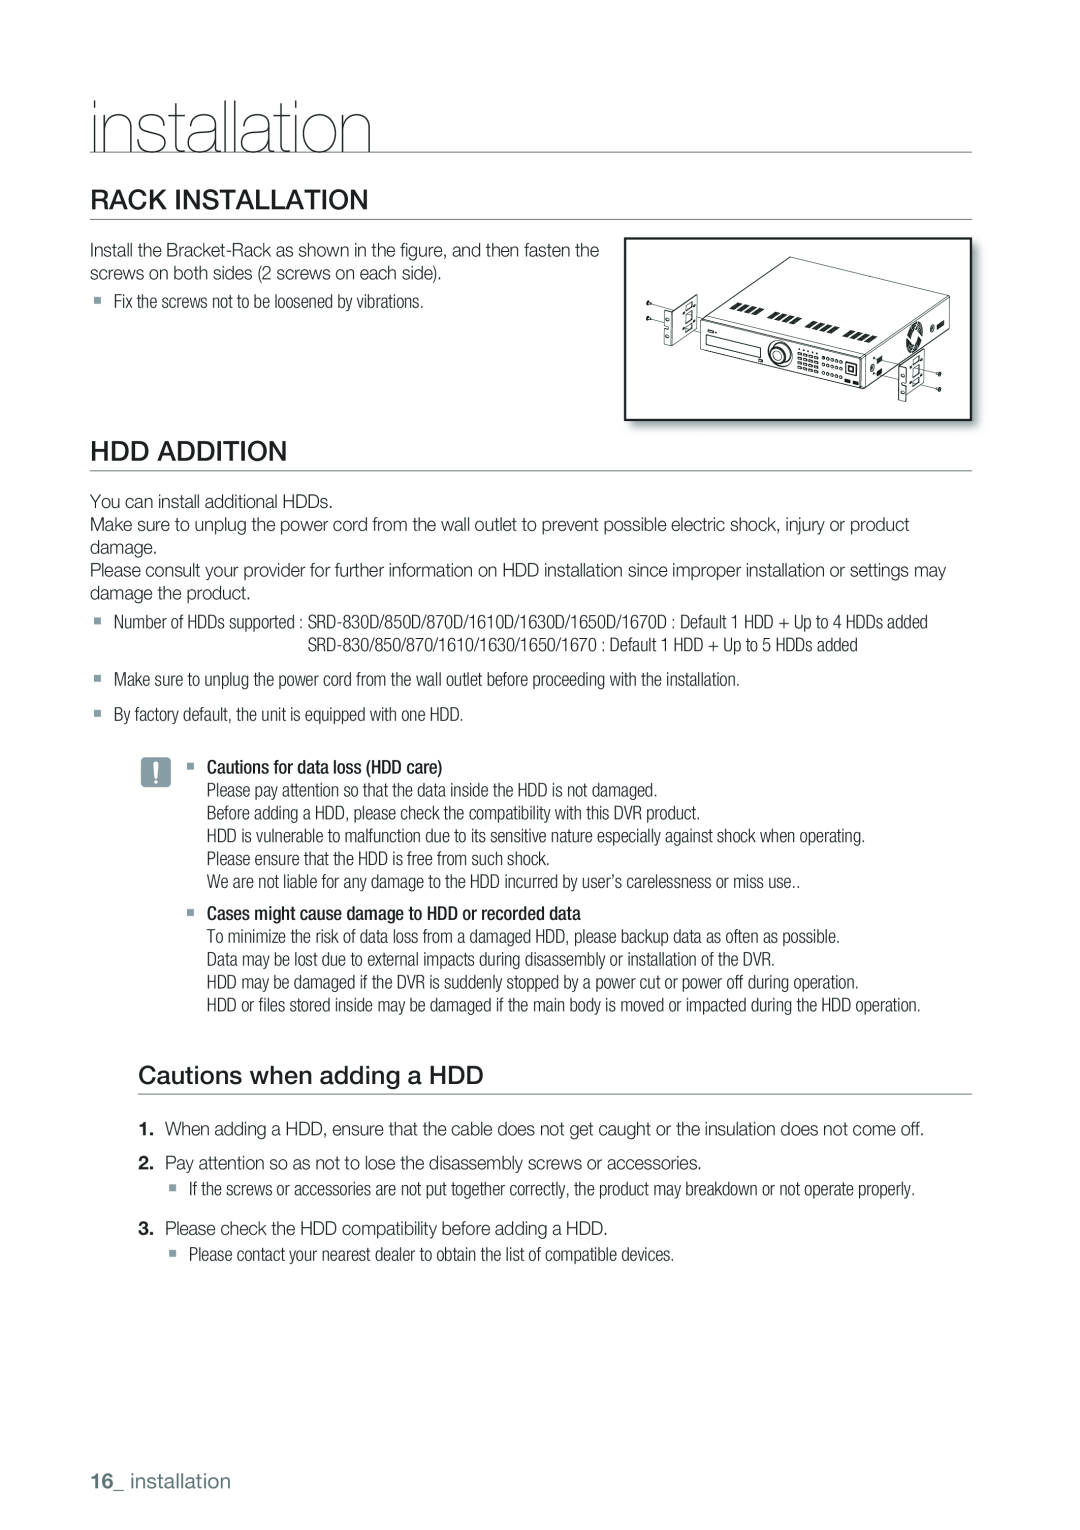 Samsung 1650D, 870D, 1670D, SRD-850D, SRD-830D Rack Installation, HDD Addition, Cautions when adding a HDD, installation 